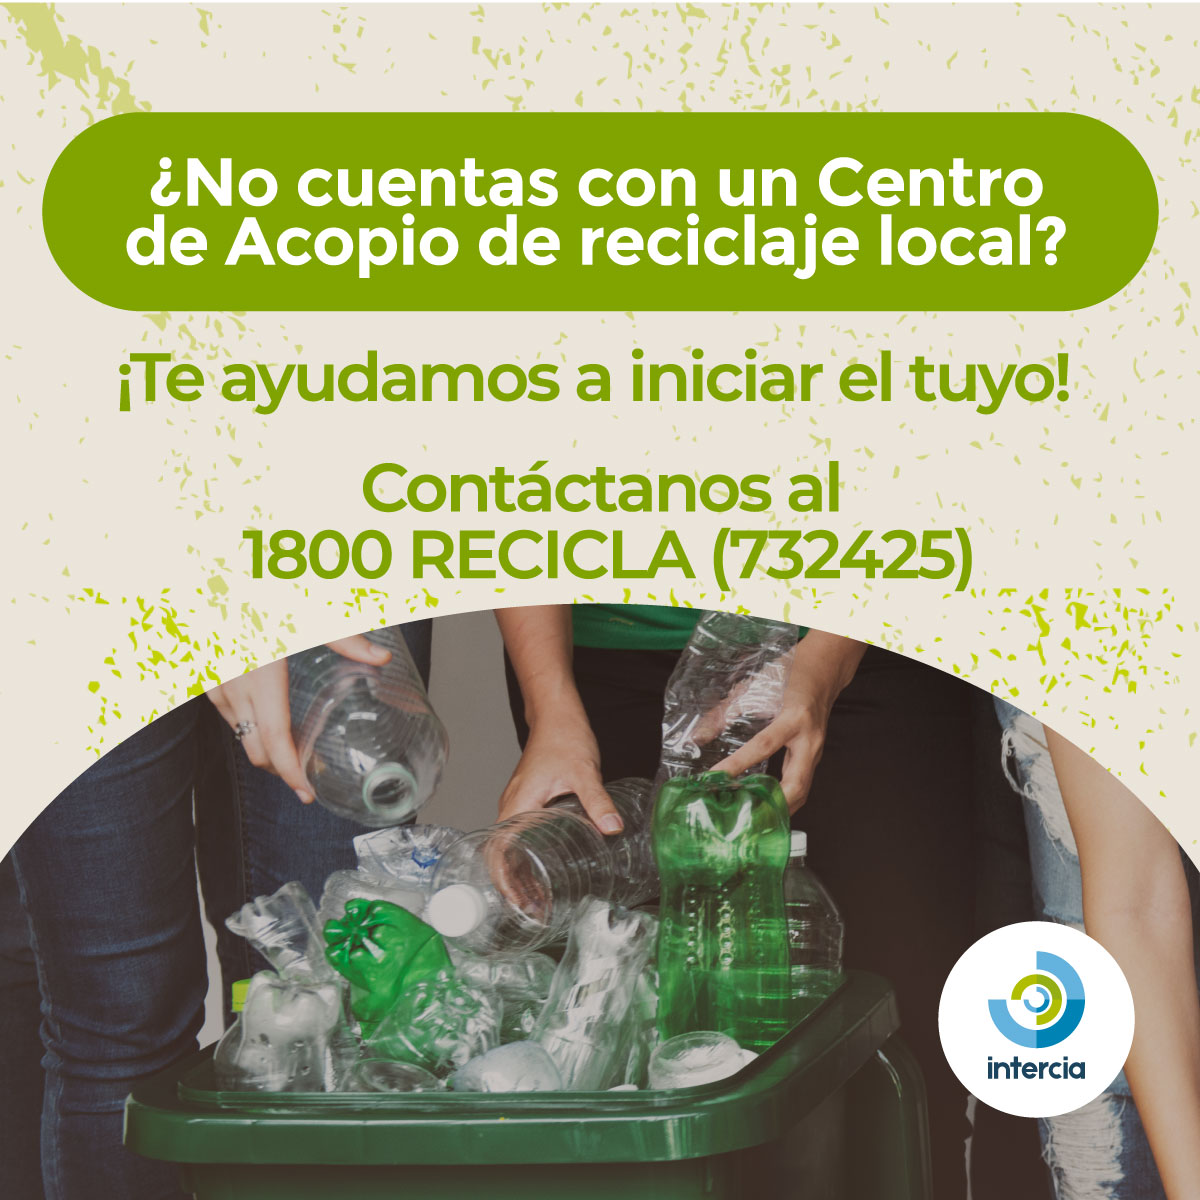 Si en tu ciudad no cuentan con un punto de reciclaje ¡Es tu oportunidad!👀 Nosotros te ayudamos en todo el proceso, contáctanos al 1800 RECICLA (732425). #InterciaEcuador #reciclajeecuador